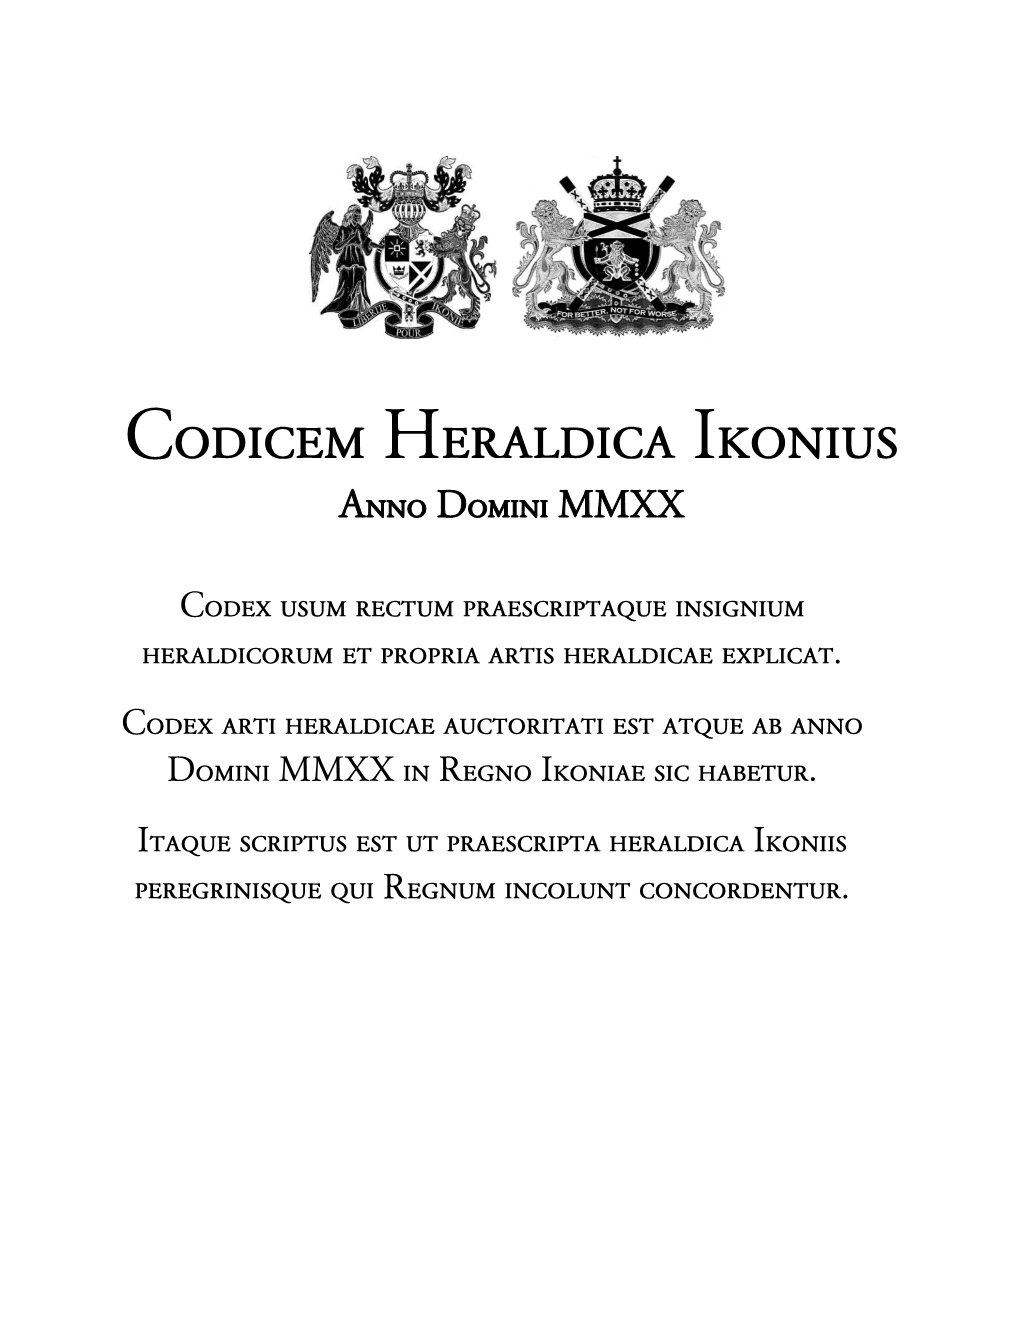 Codicem Heraldica Ikonius Anno Domini MMXX